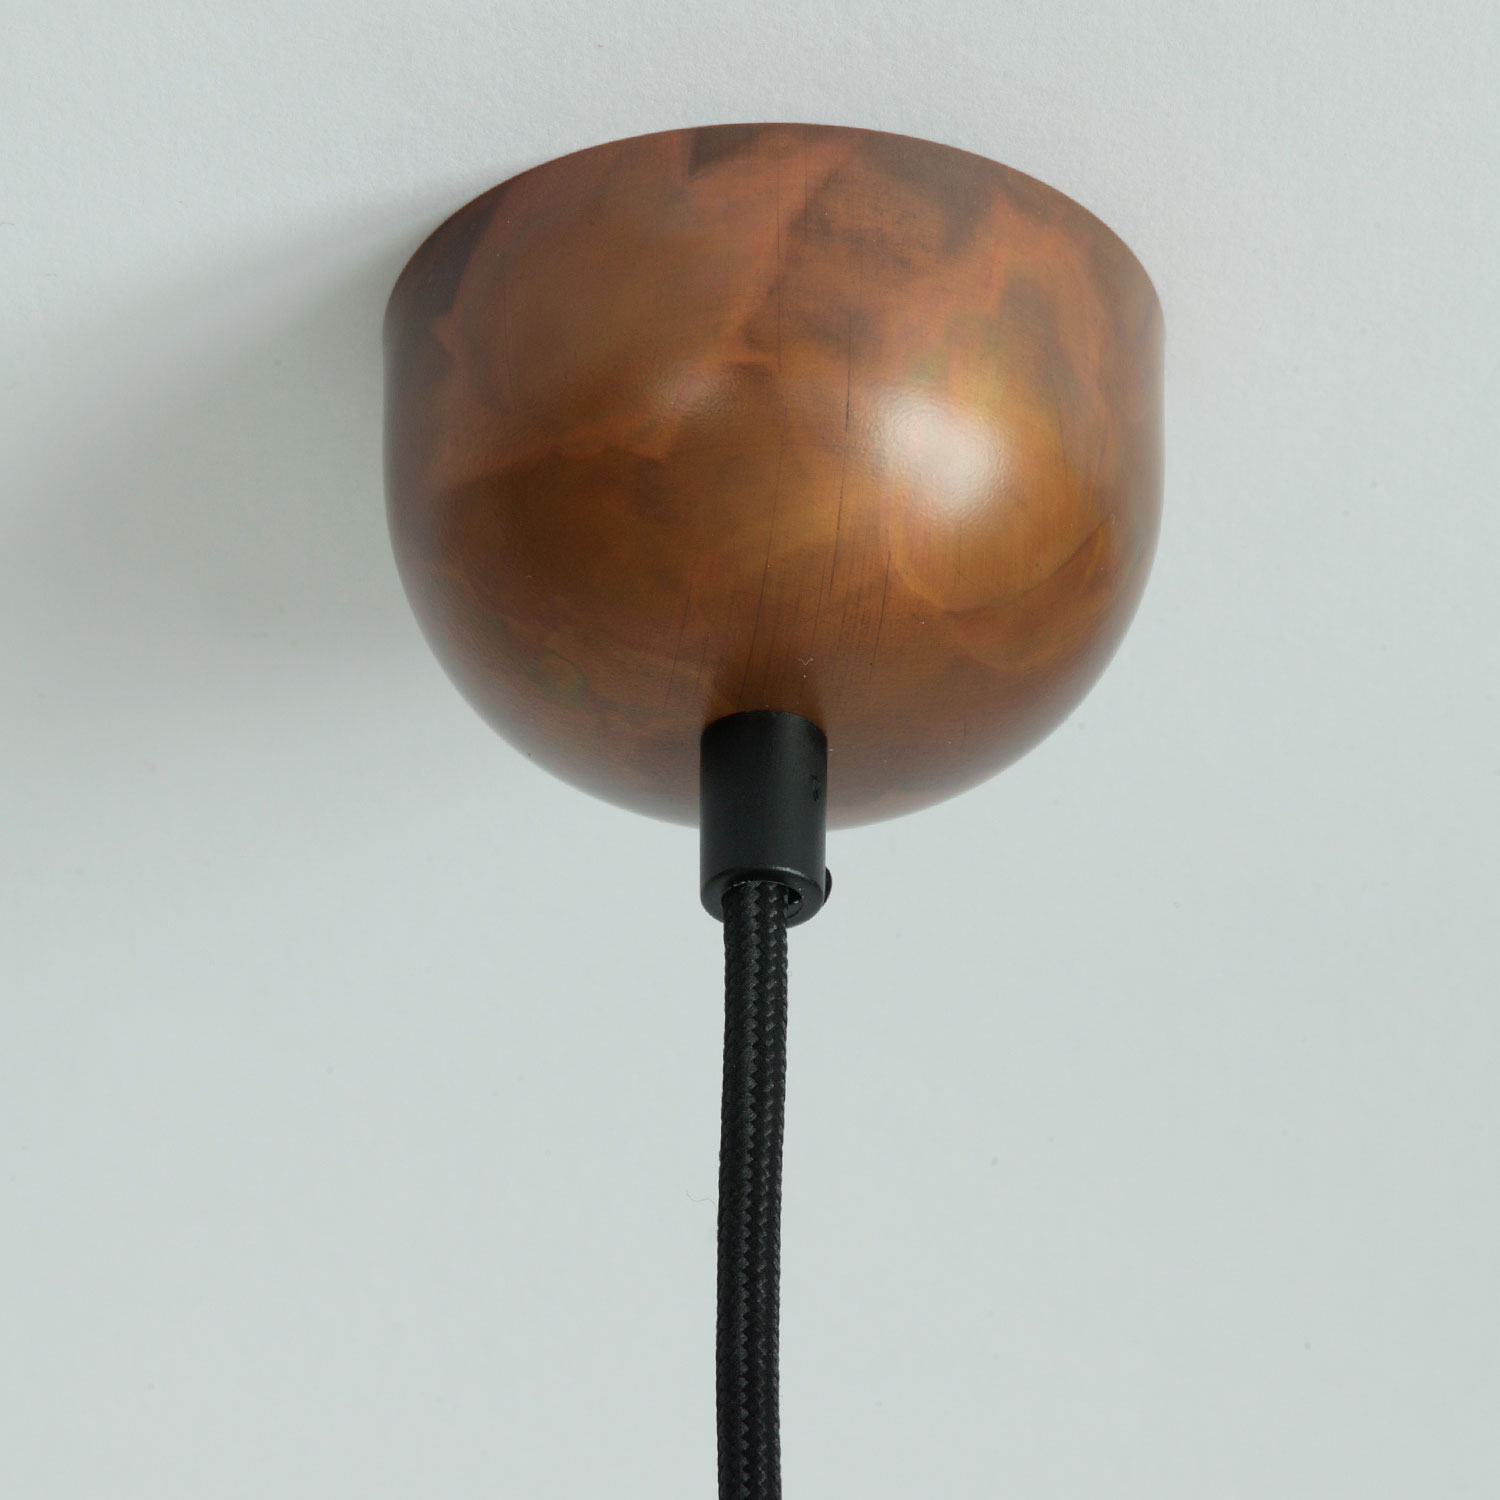 KÖLN Kupfer-Hängeleuchte mit Halbkugelschirm, Ø 20-50 cm: Kupfer geflammt, matt lackiert, schwarzes Textilkabel